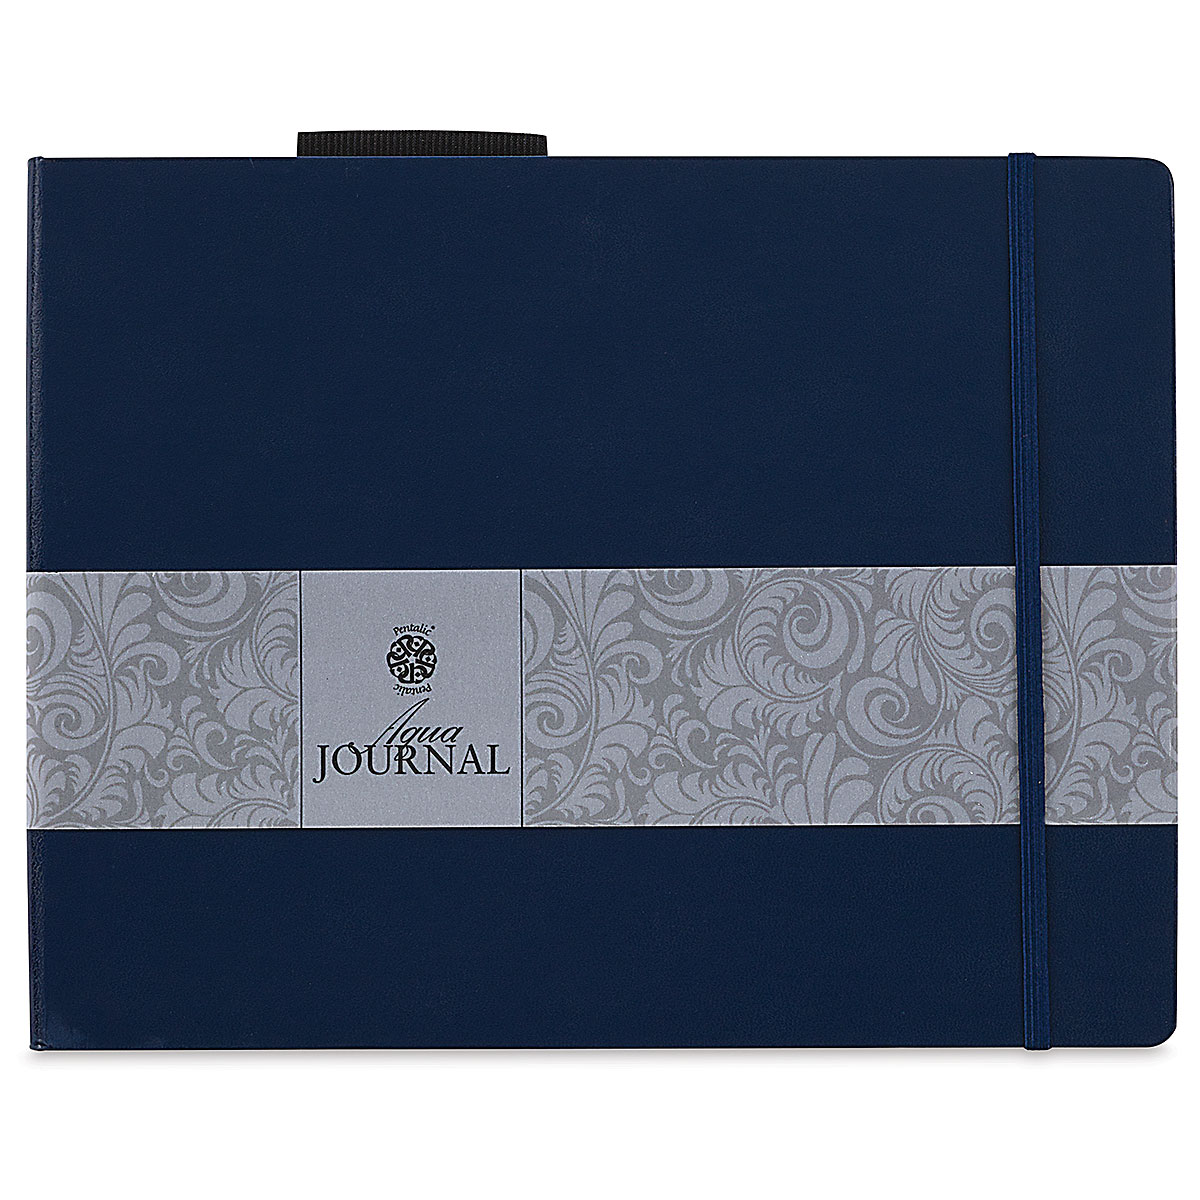 Pentalic Aqua Journals | Blick Art Materials